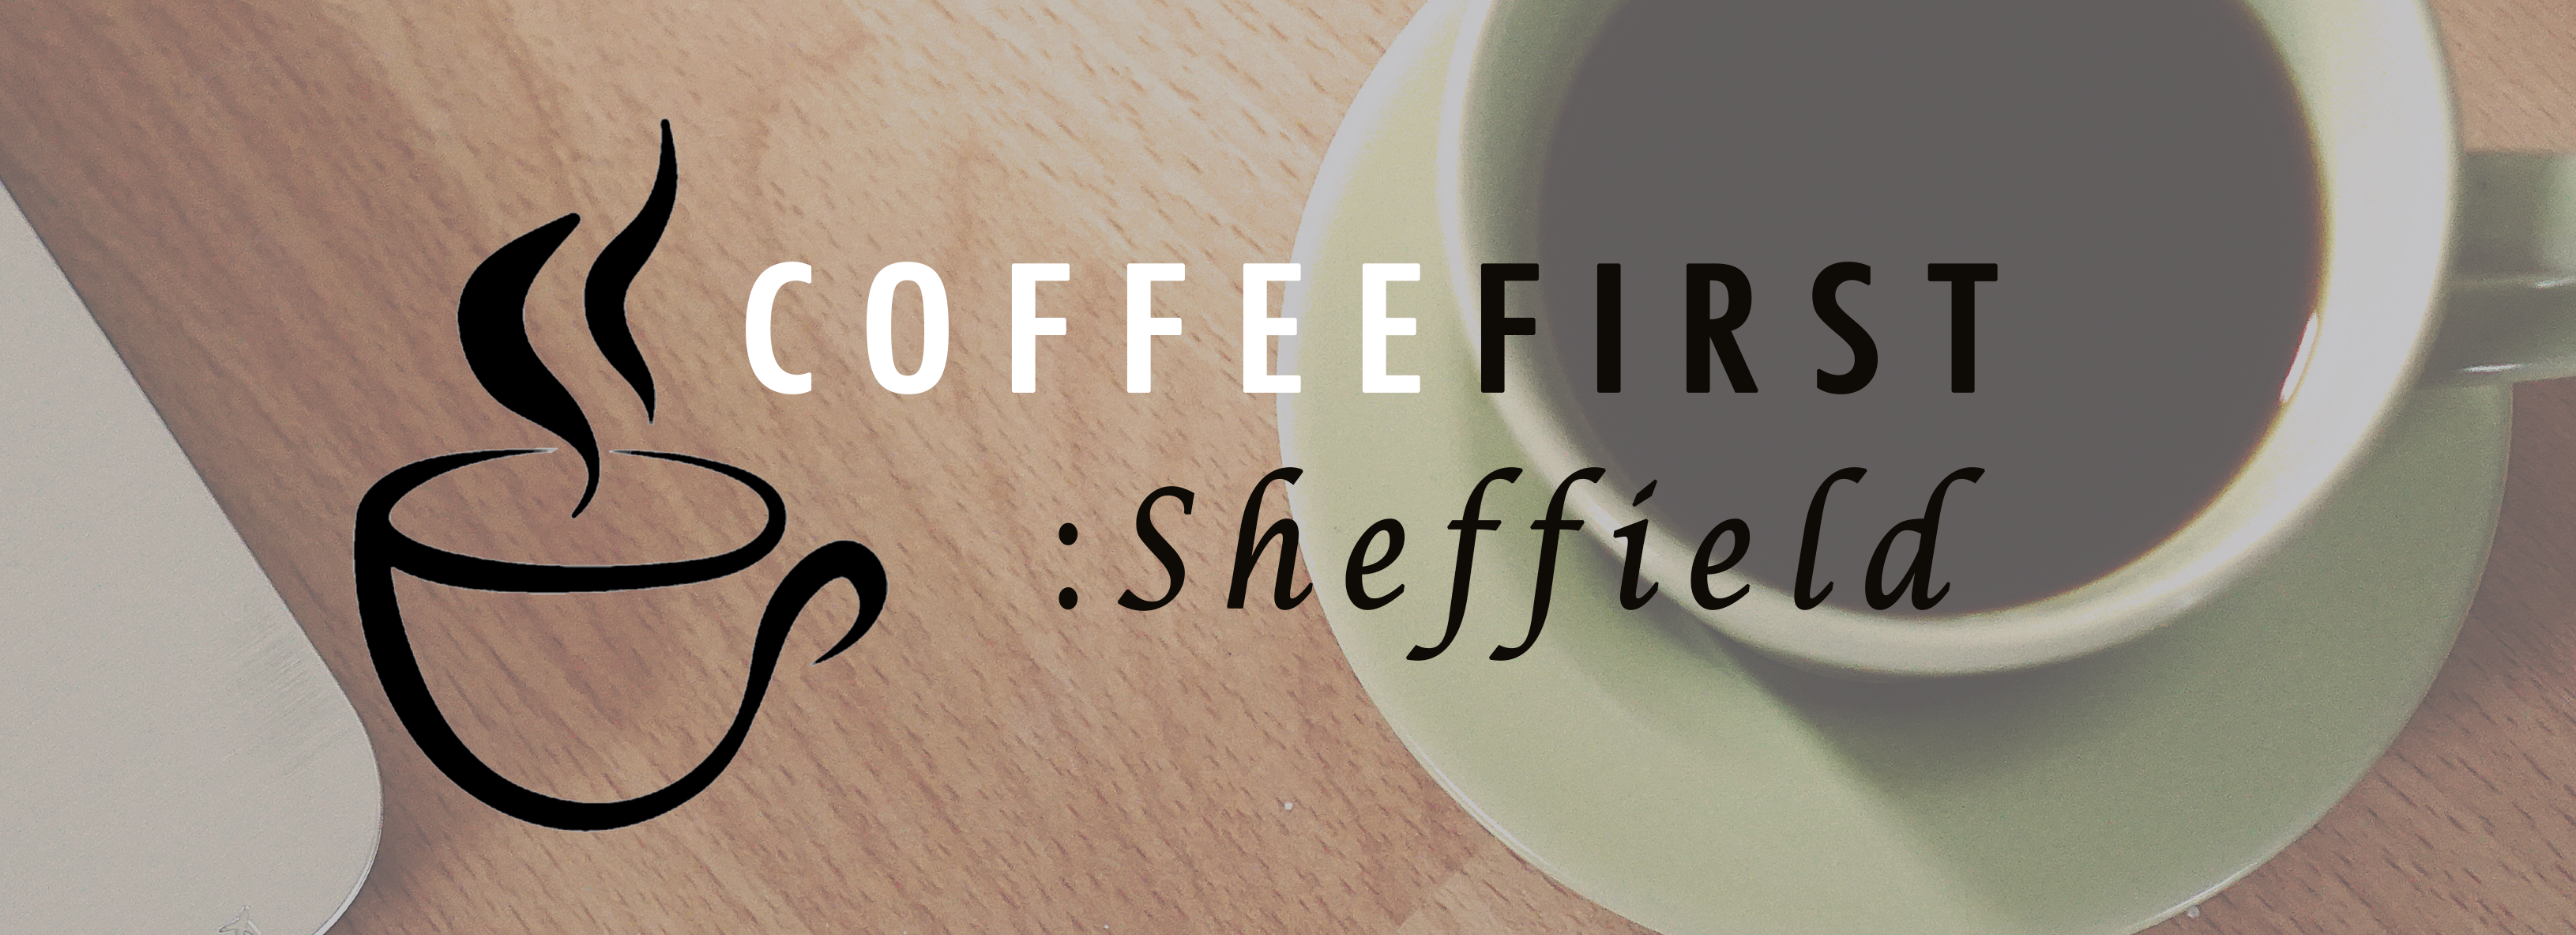 CoffeeFirstSheffield